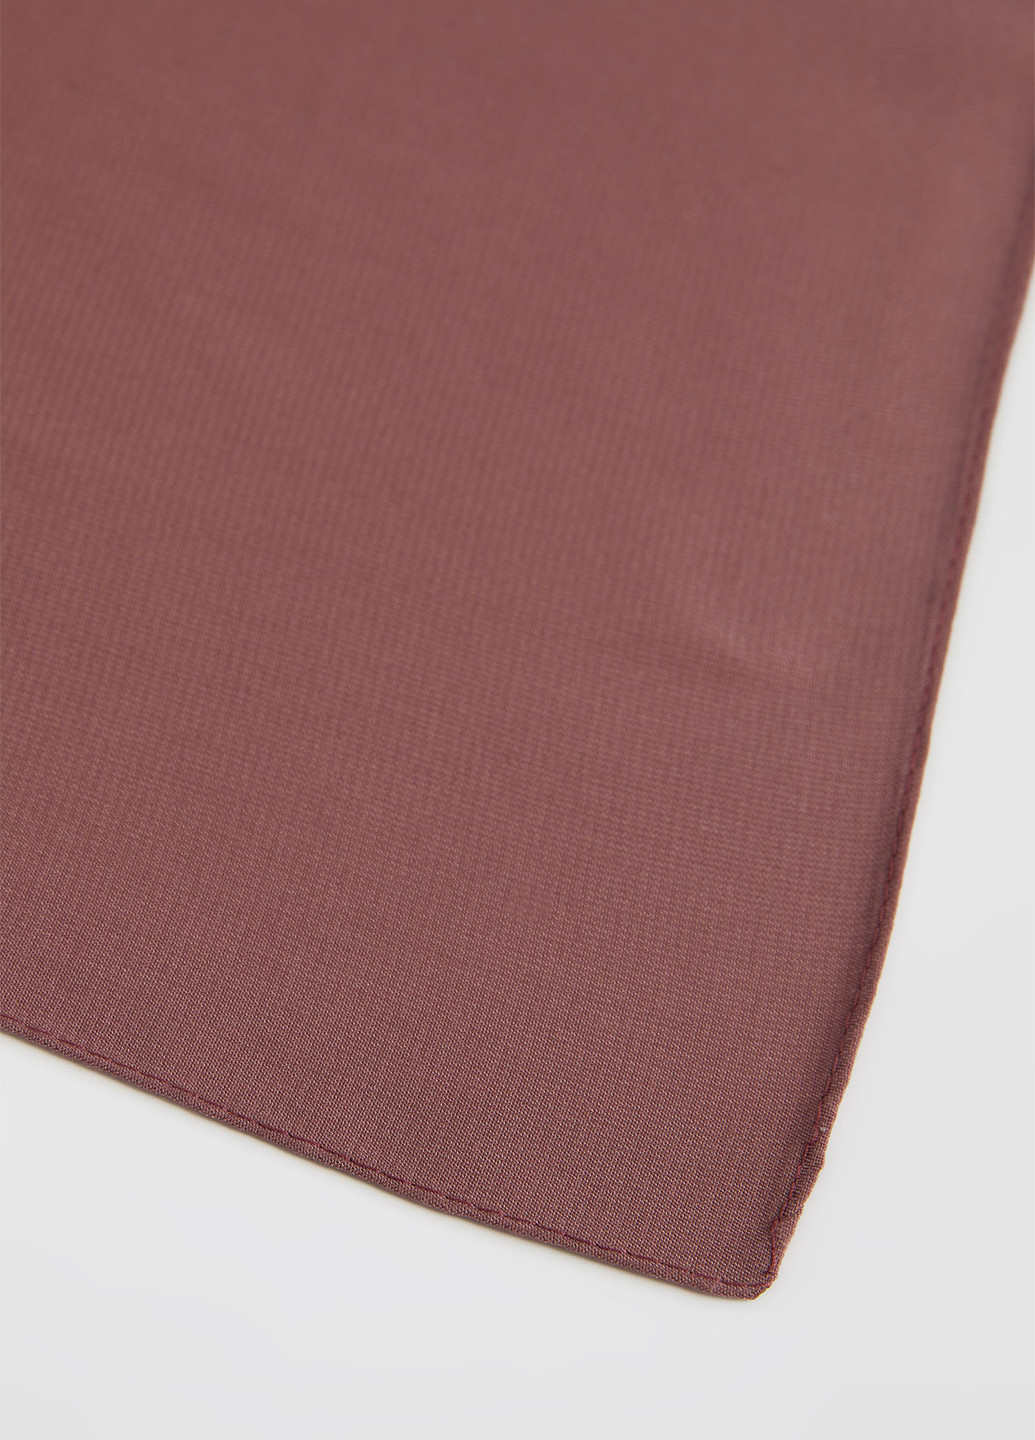 Шарф DeFacto розово-коричневый кэжуал полиэстер